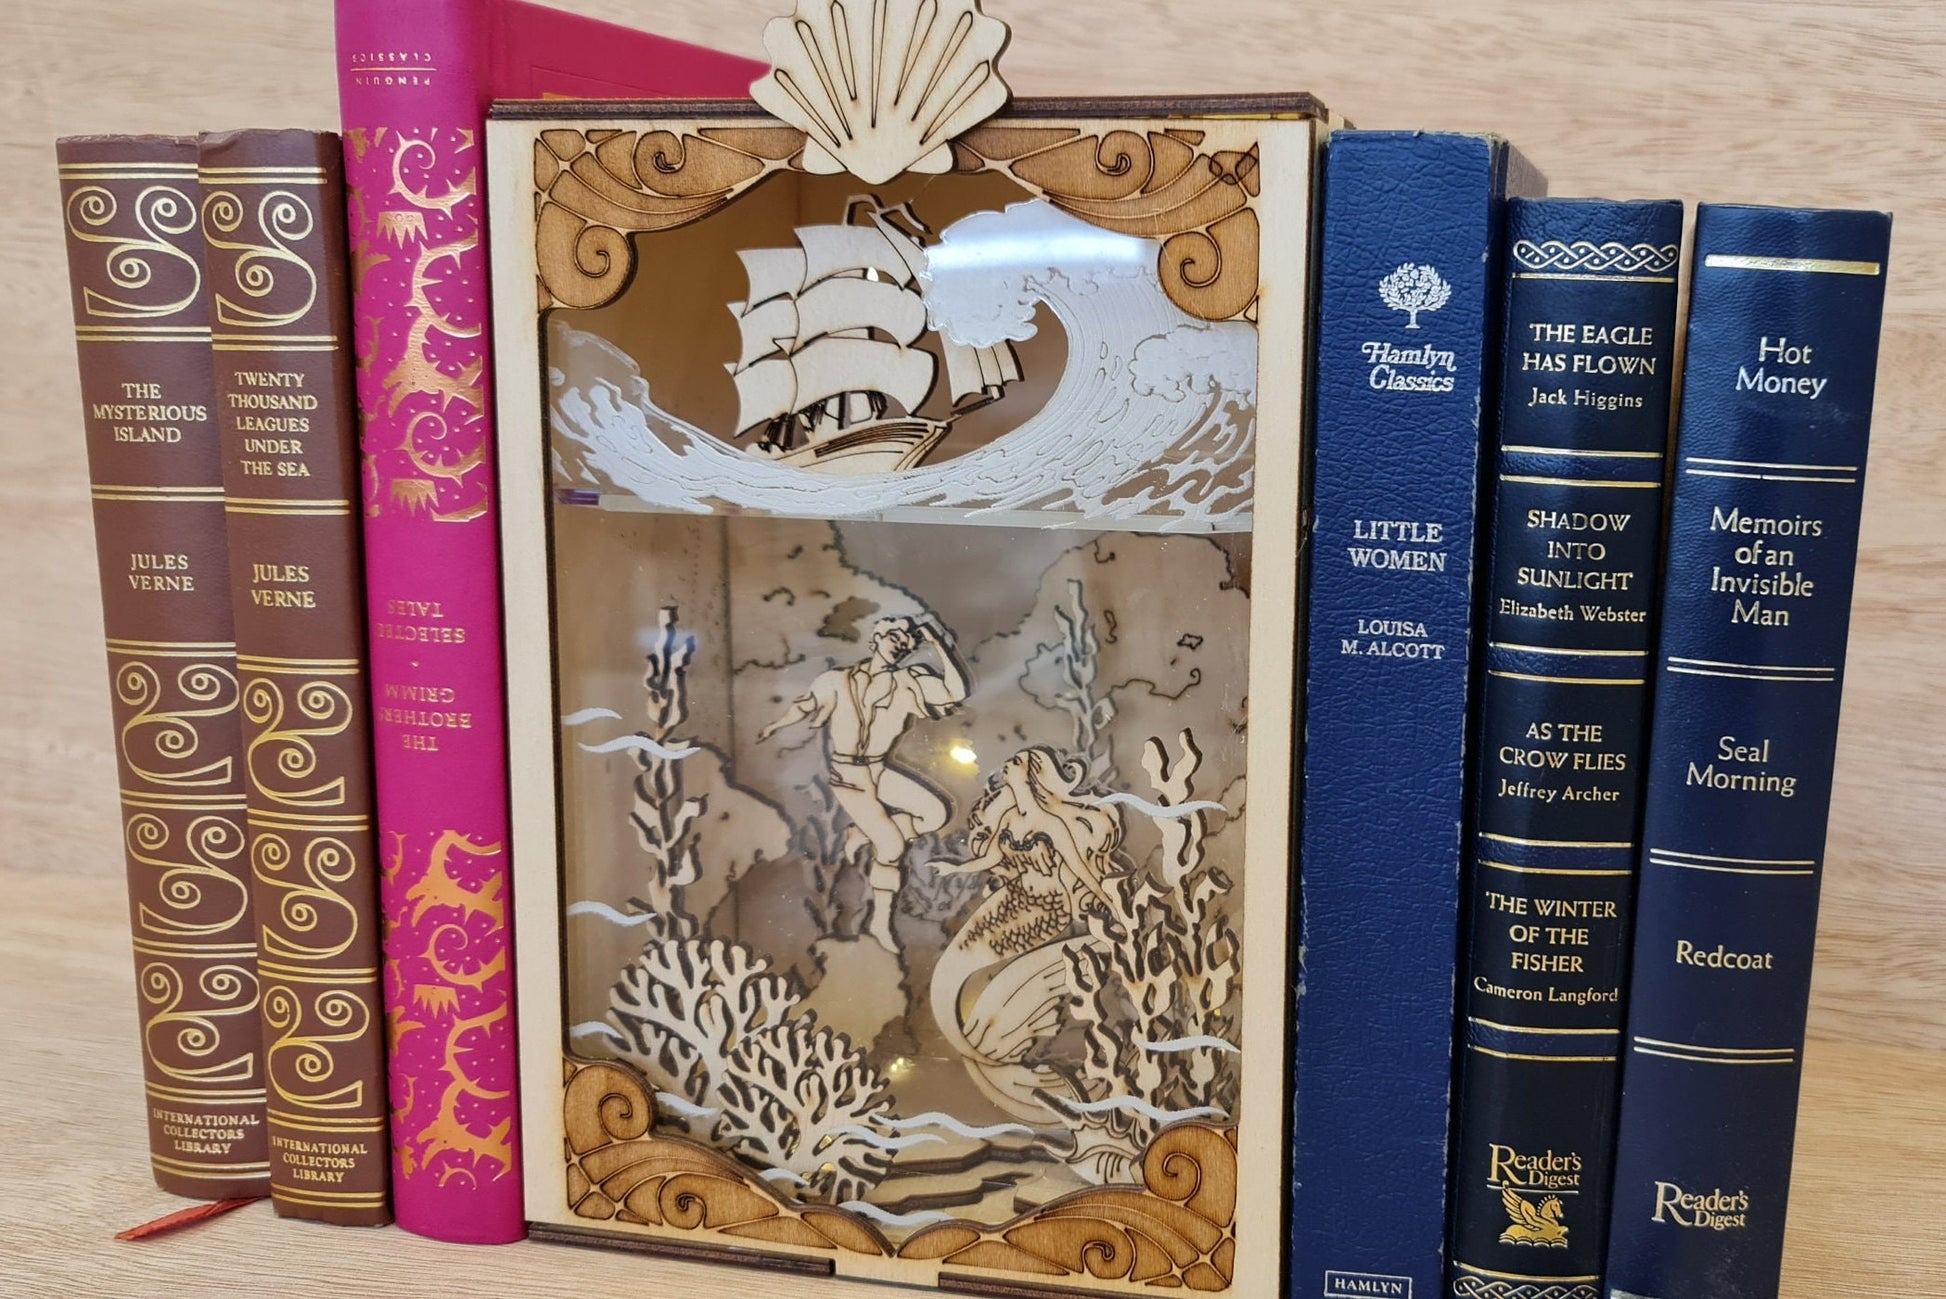 Little Mermaid Book Nook Kit / Bookshelf insert